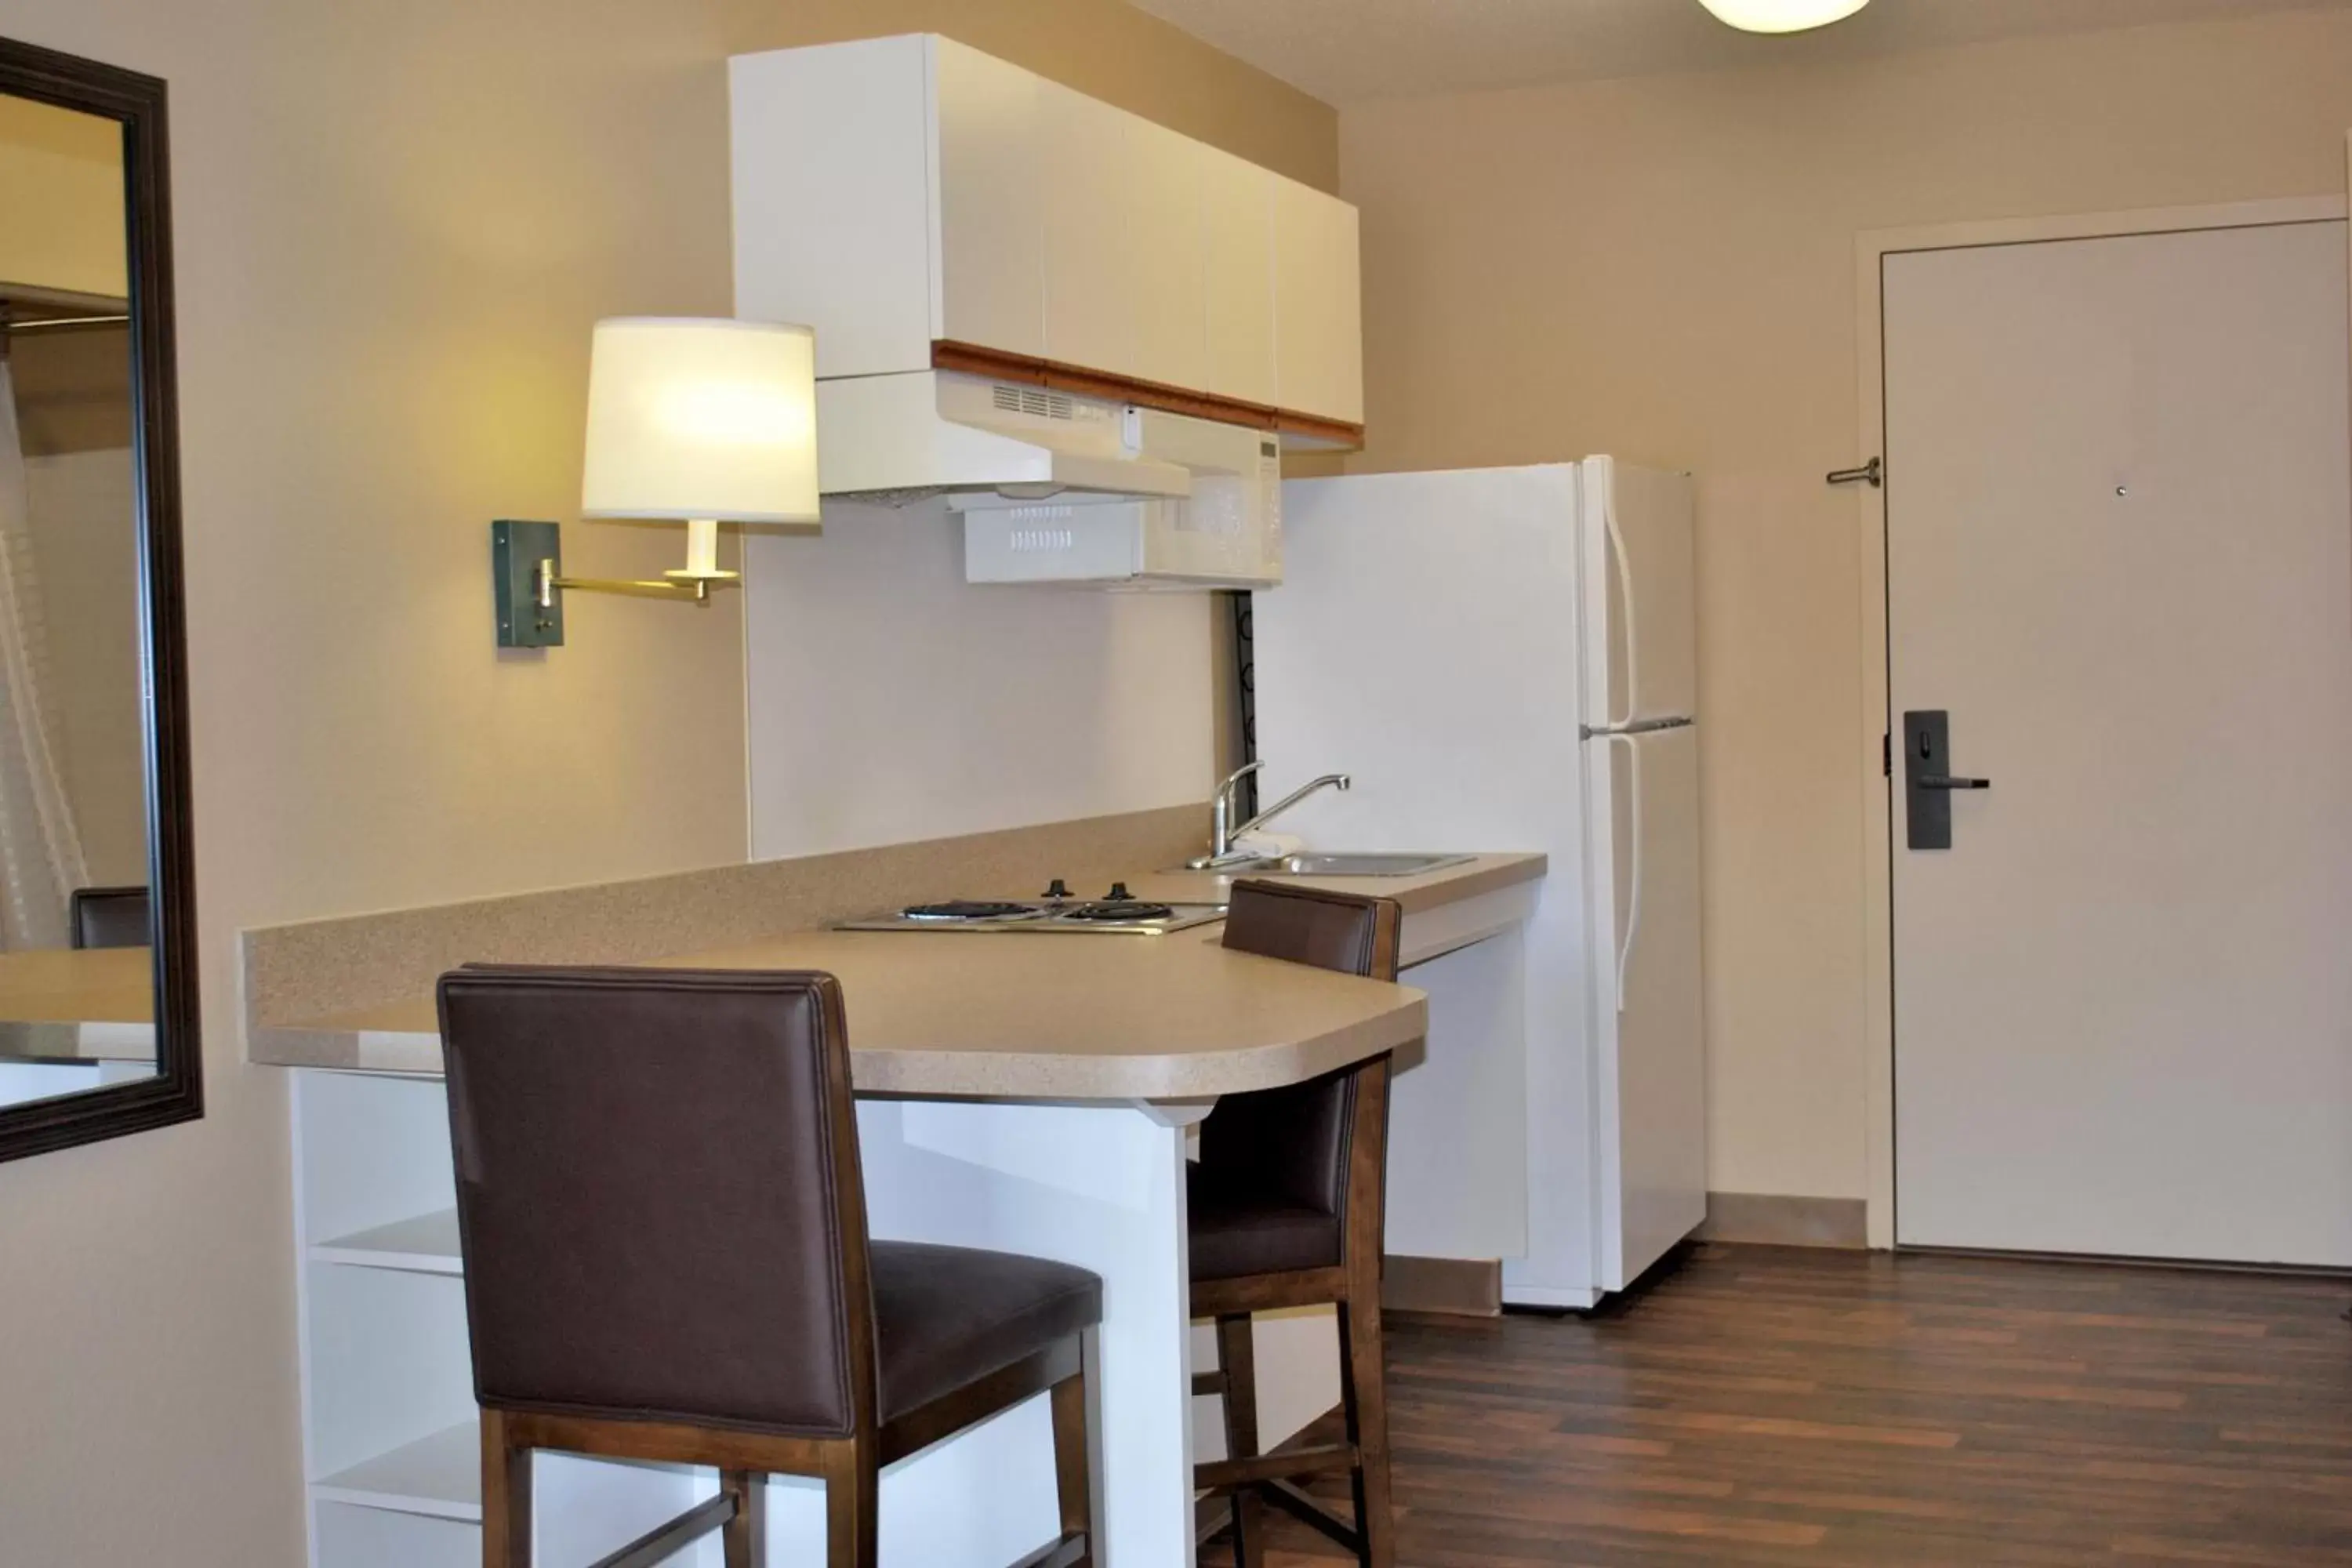 Kitchen or kitchenette, Kitchen/Kitchenette in Extended Stay America Suites - Milwaukee - Brookfield